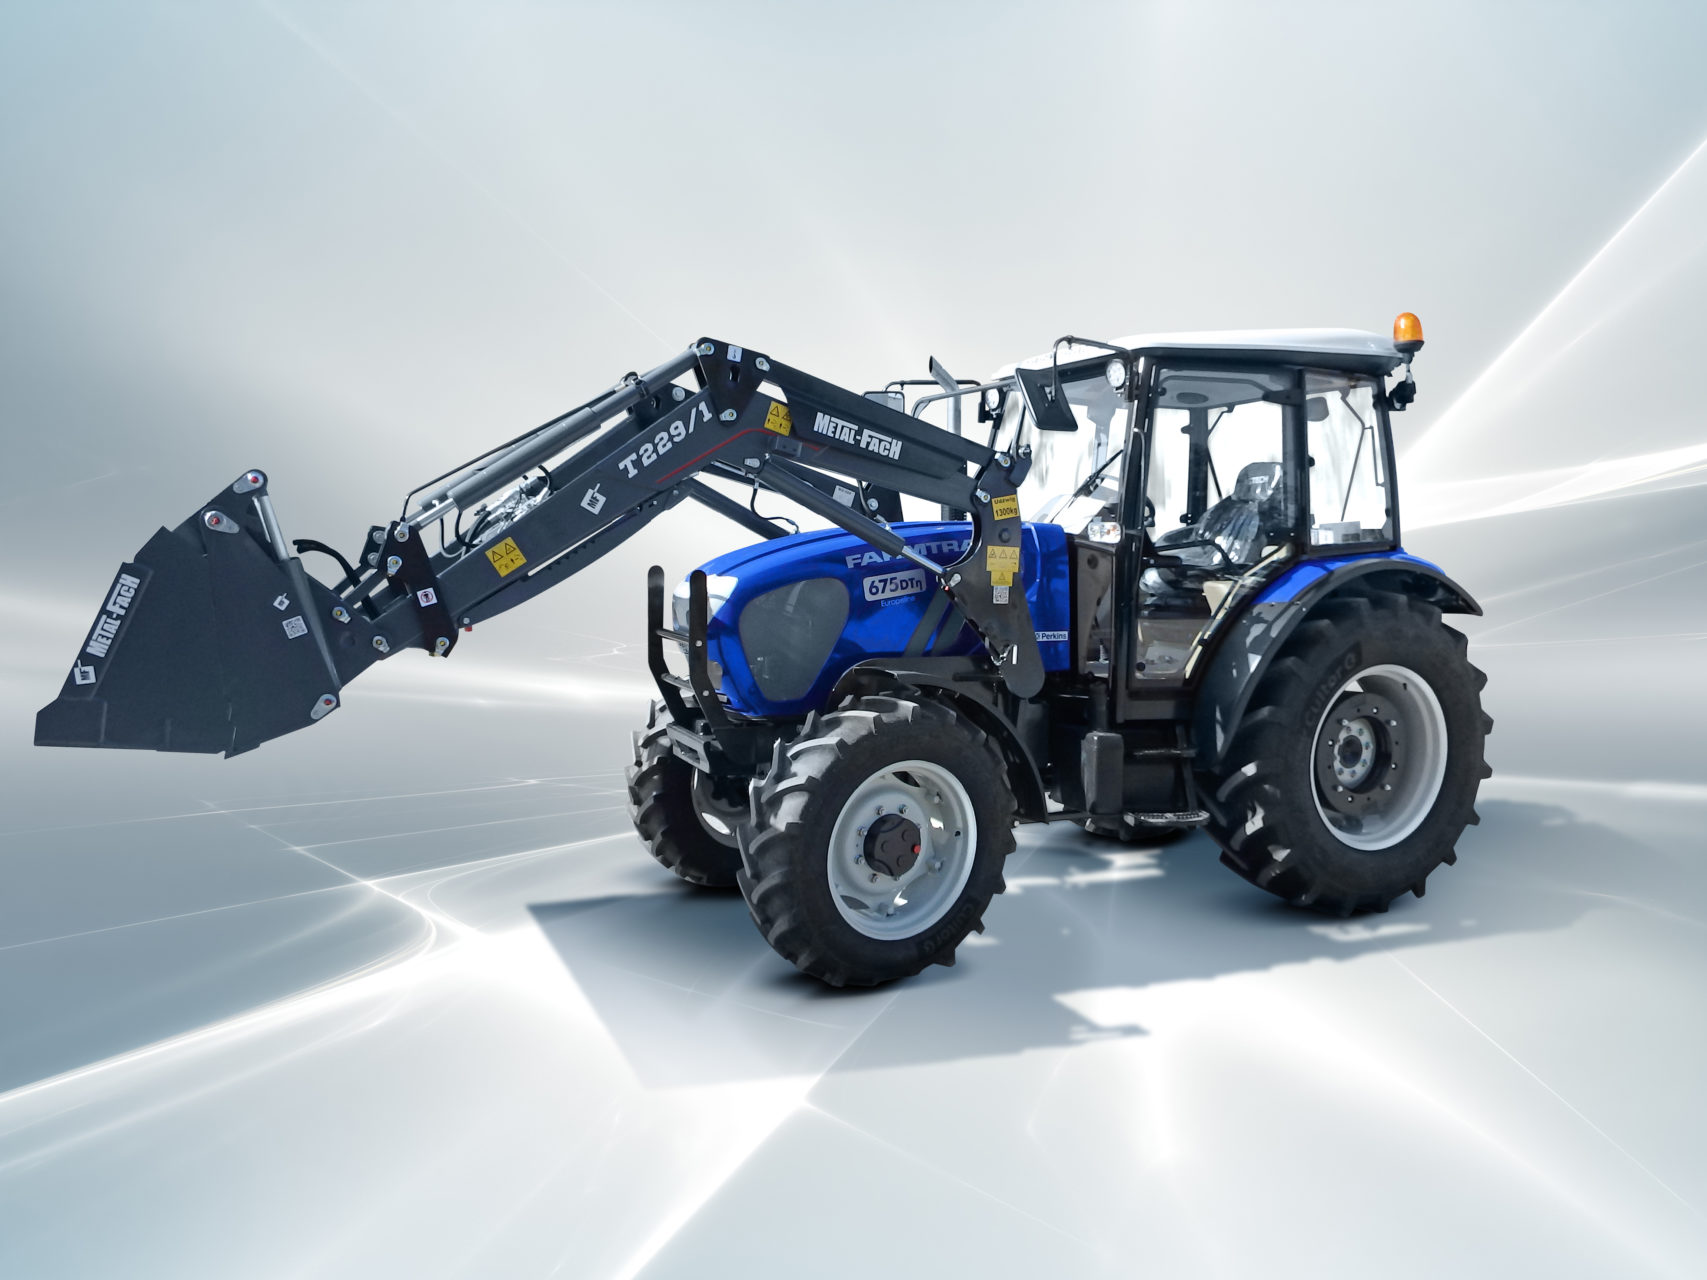 Traktor Farmtrac 675 55 kW